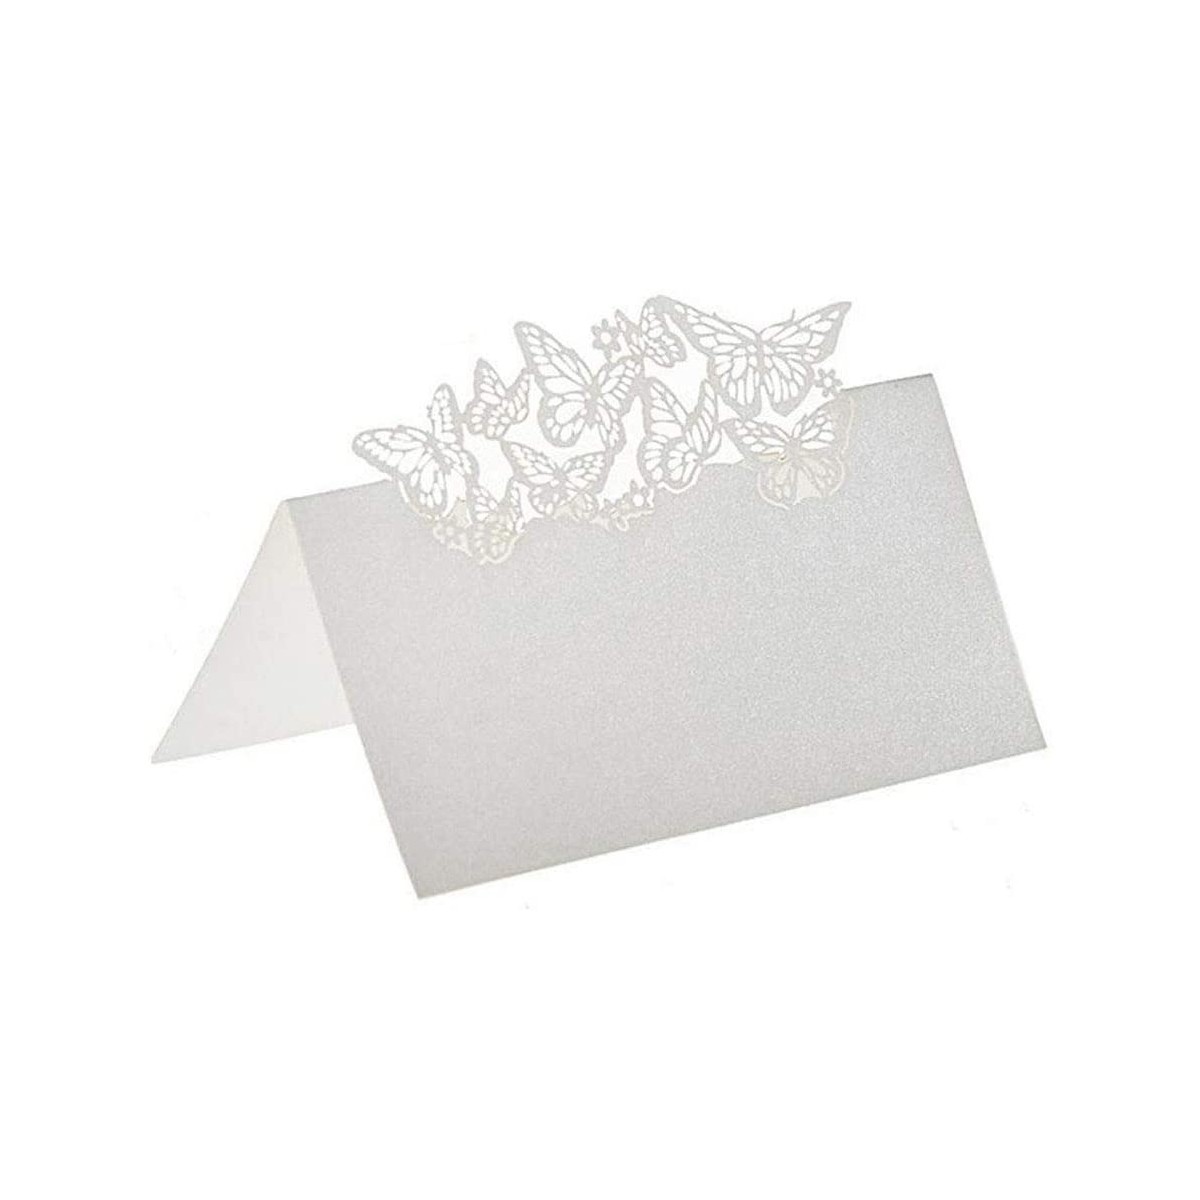 Kit con 100 Segnaposto tavola bianchi intagliati con farfalle, per matrimonio